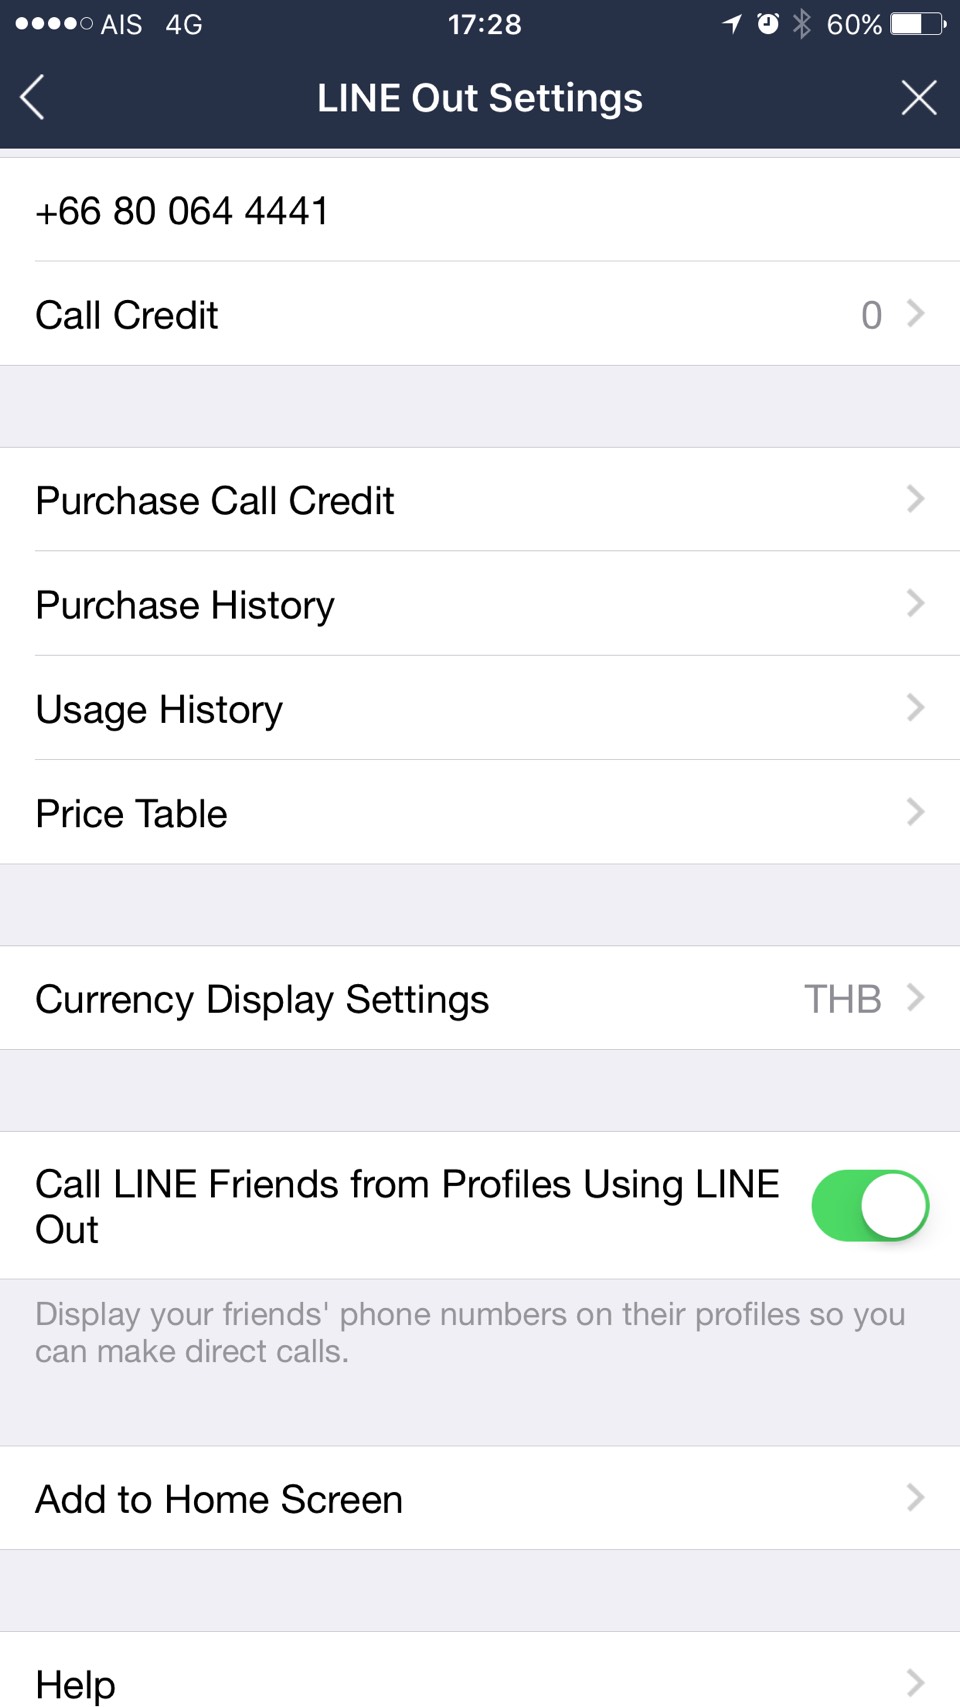 14971022 924615951001865 640621516 o | IOS (iPhone/iPad) | Line รองรับ PhoneKit บน iOS10 แล้ว การโทรเข้า-โทรออกจากนี้จะใช้การแจ้งเตือนเหมือนสายทั่วไปโทรเข้าทั่วไป!